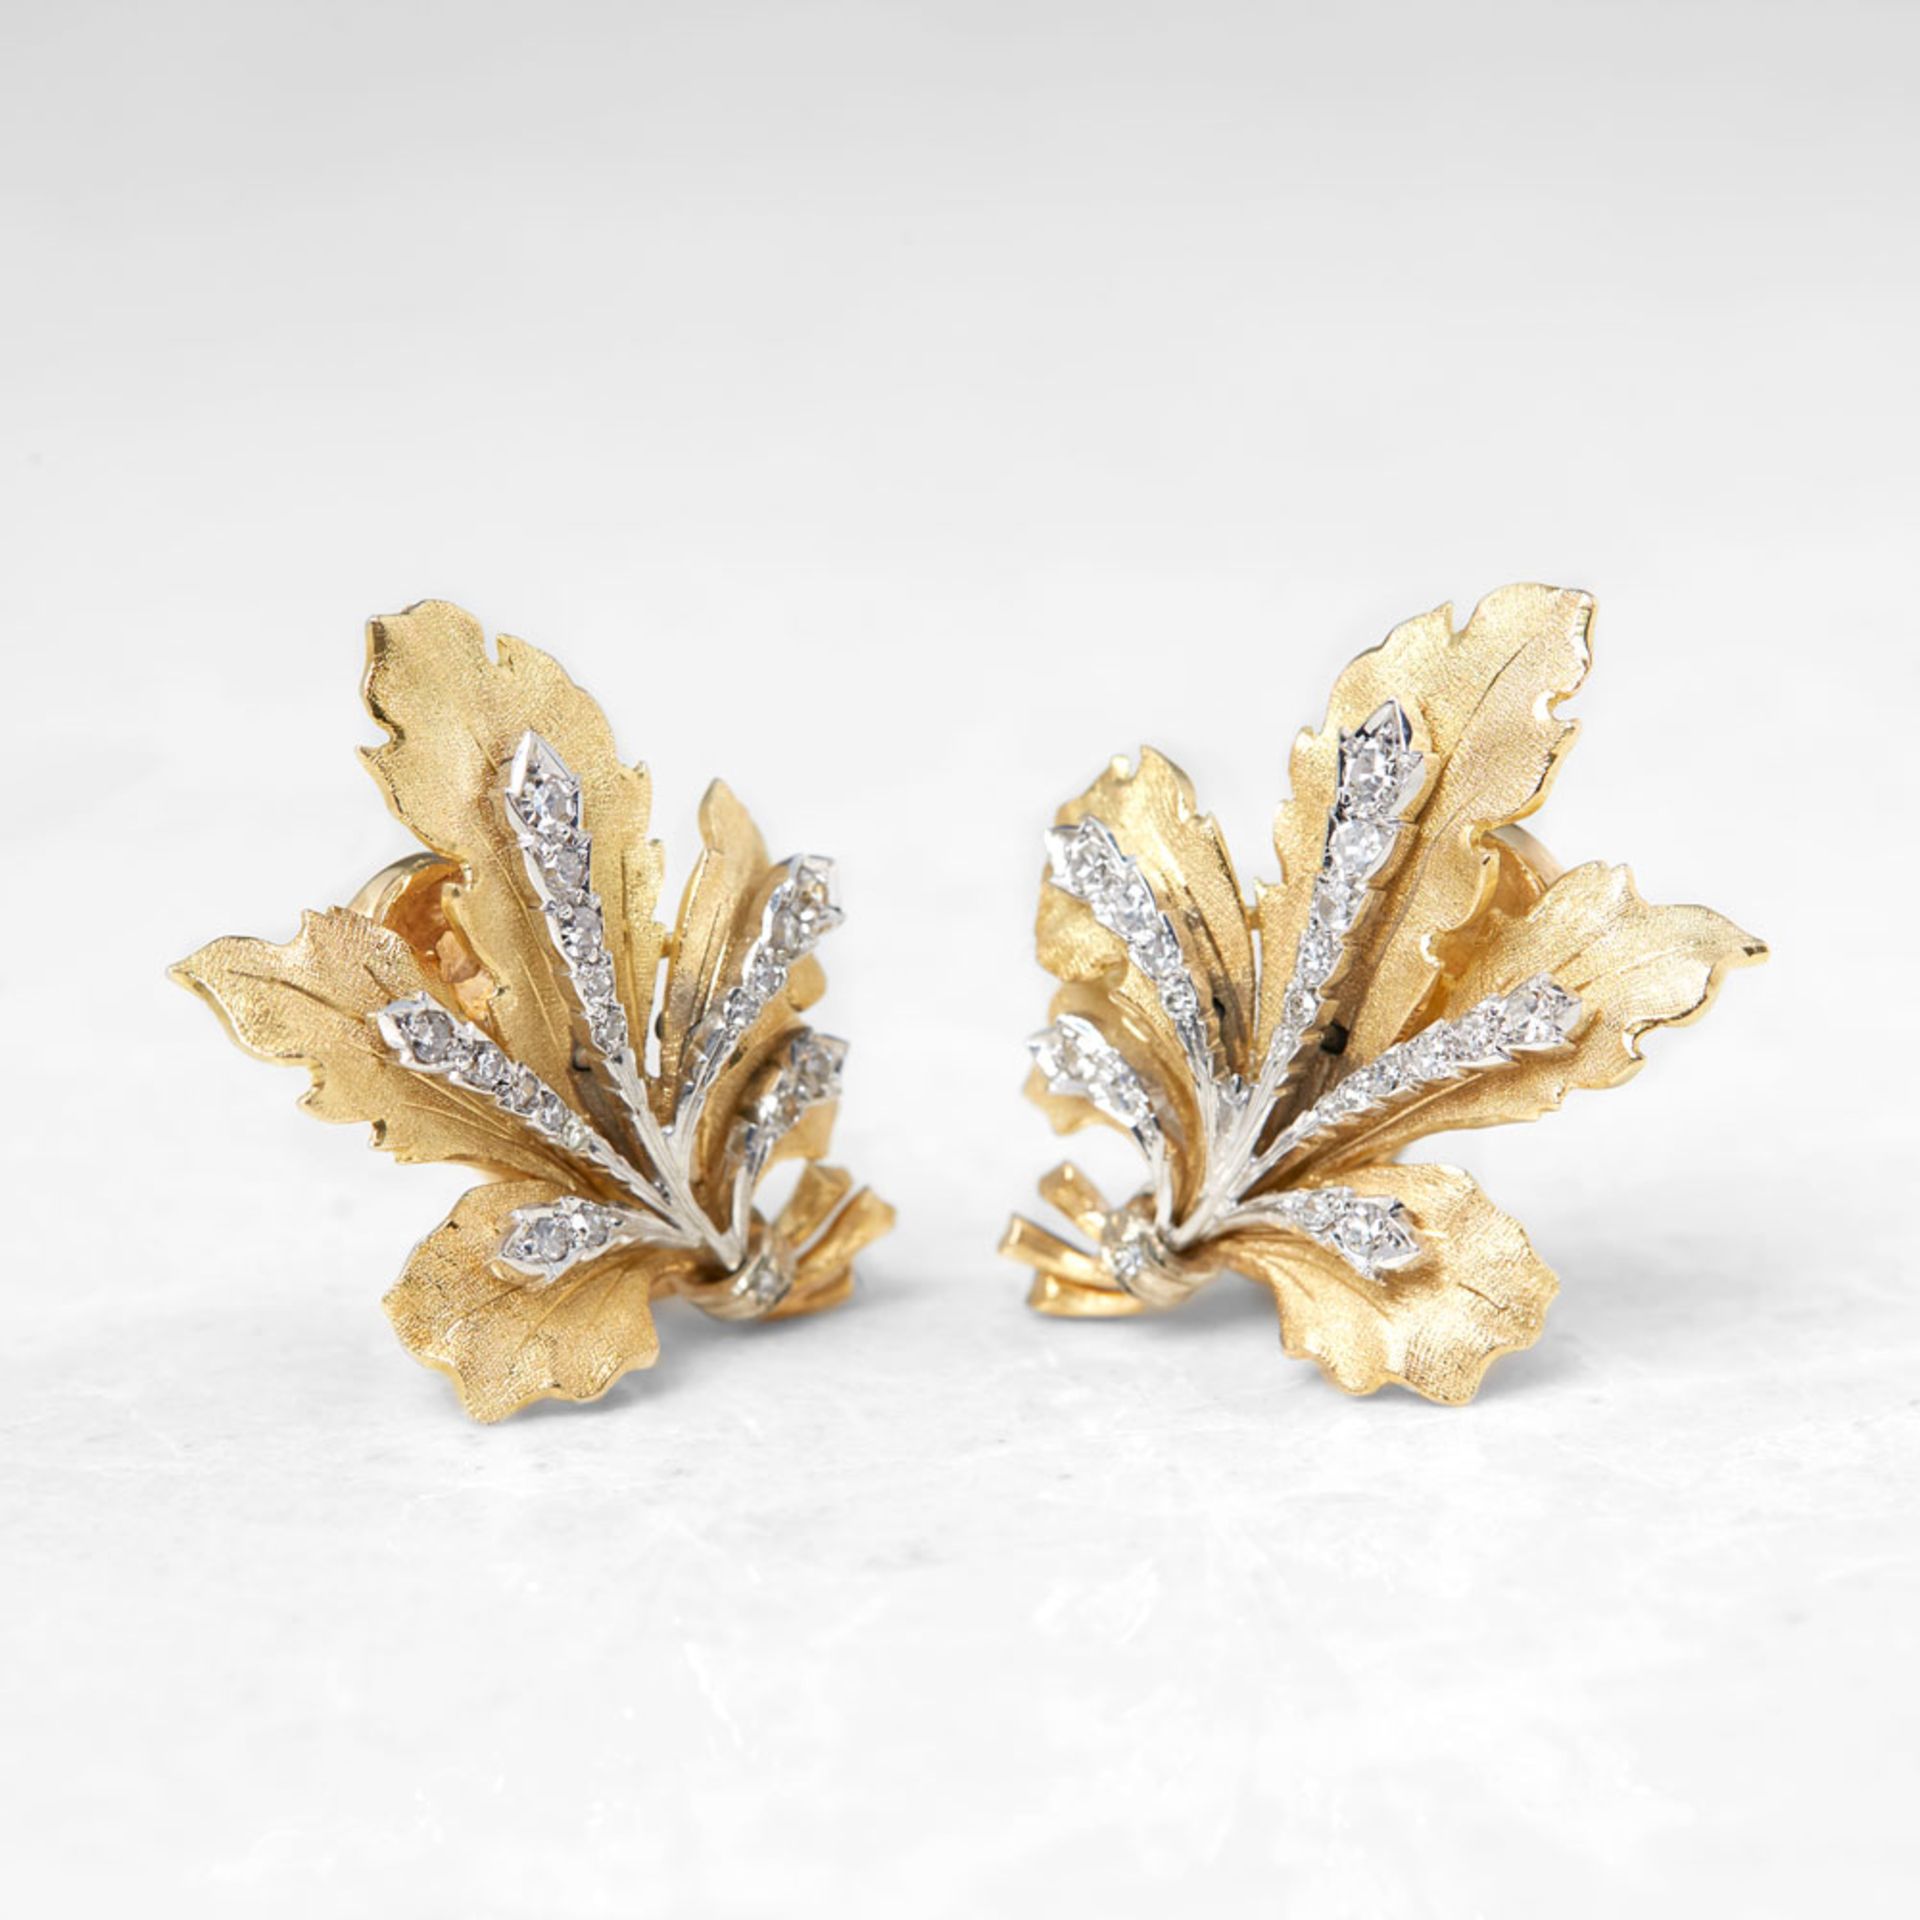 Buccellati 18k Yellow Gold 0.50ct Diamond Leaf Design Earrings - Image 2 of 7